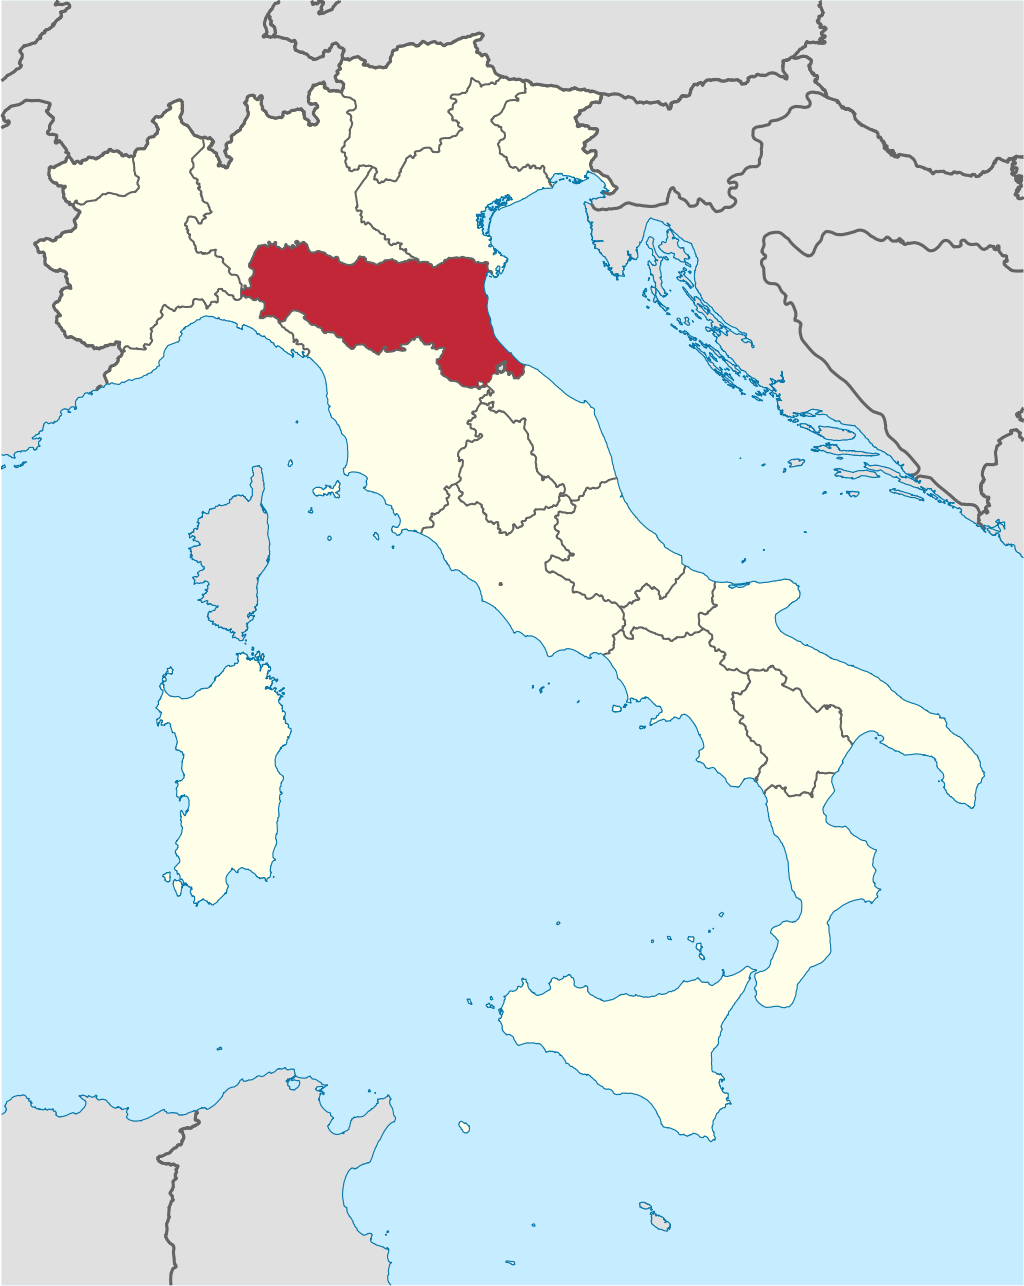 Voleno Mansion Urbex locatie in of rond de regio Emilia-Romagna (Ferrara), Italy